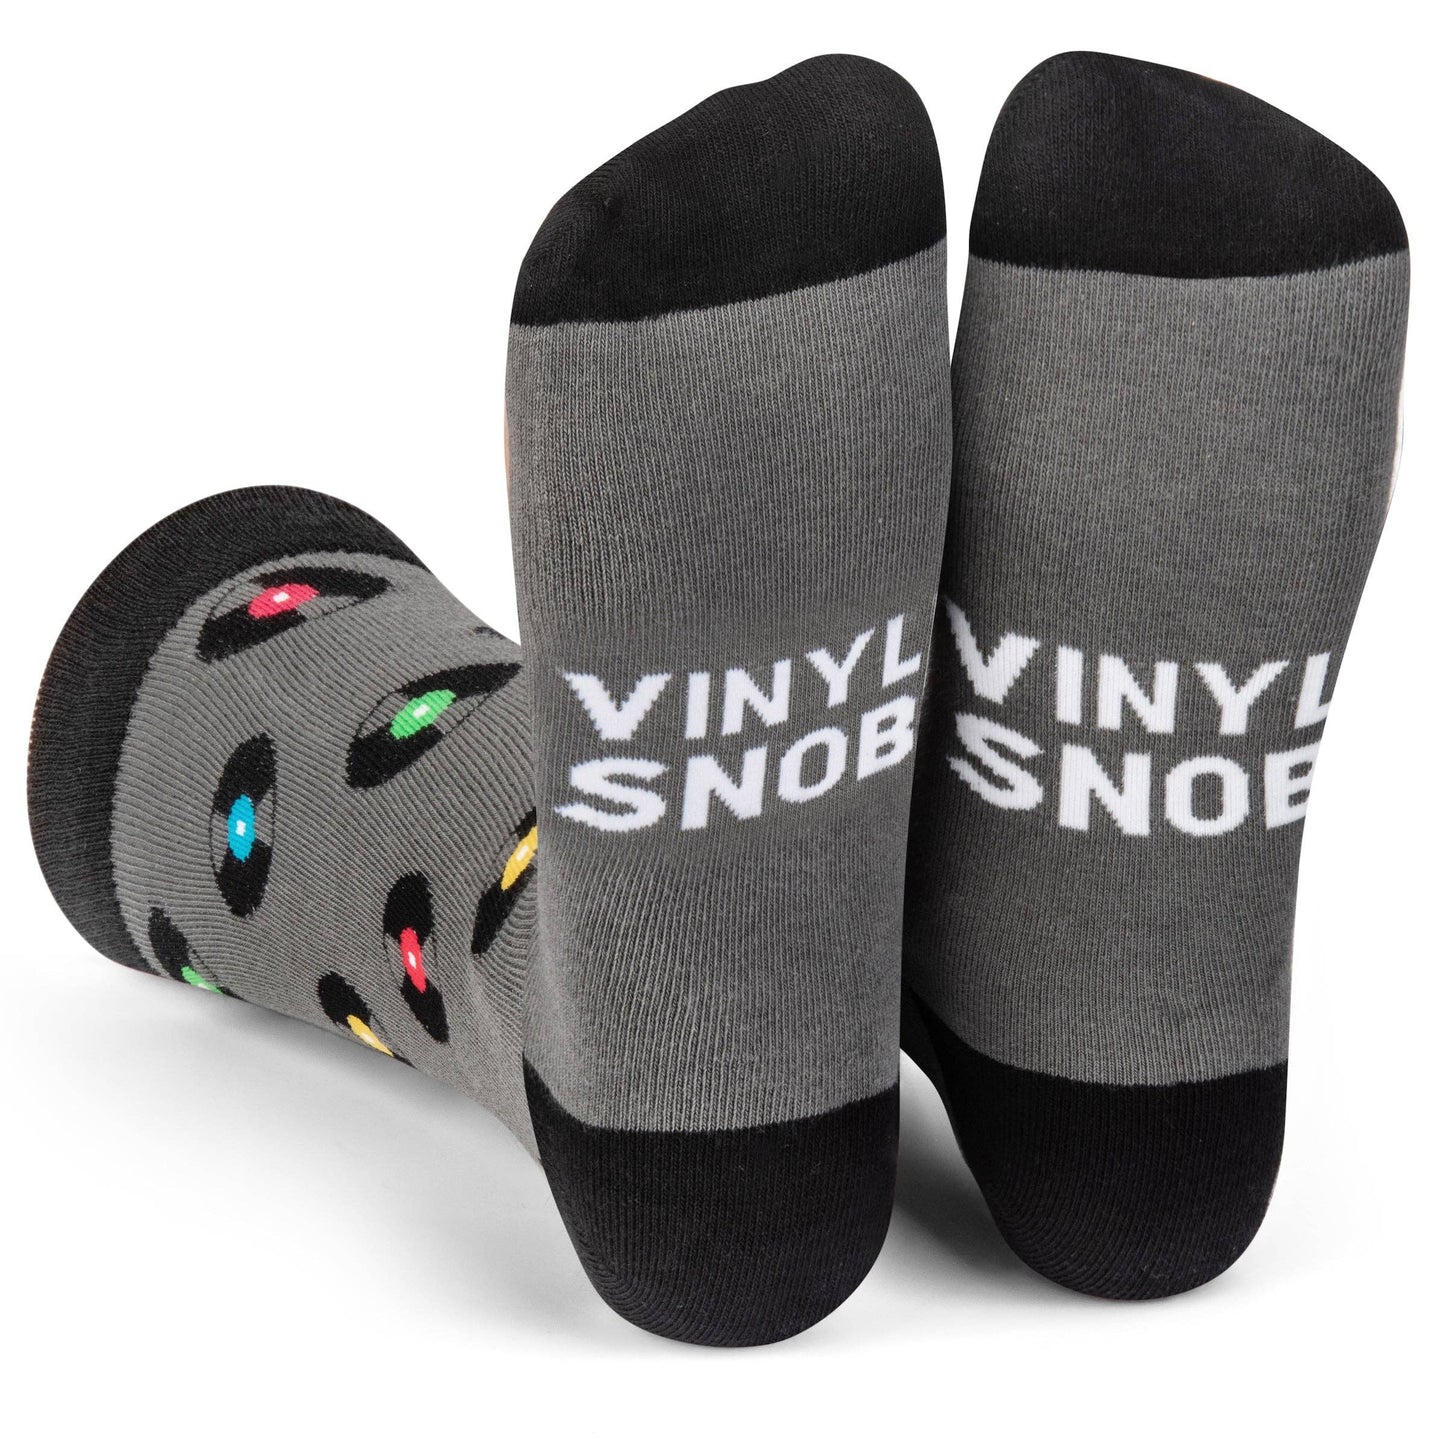 Lavley - Vinyl Snob Socks